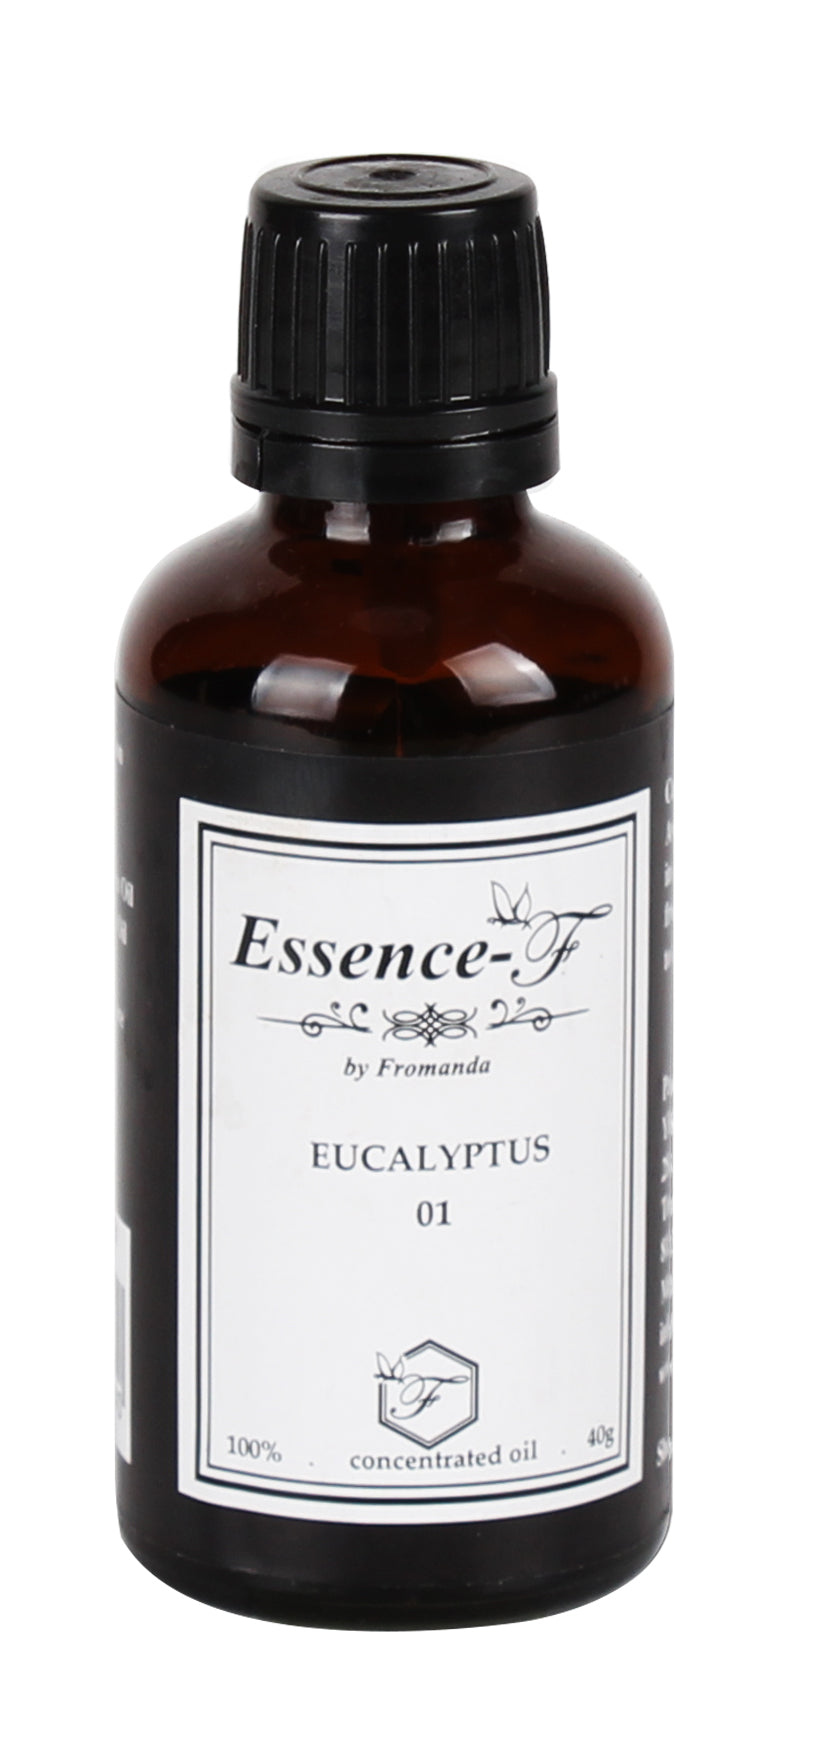 EUCALYPTUS 01 - Essence F